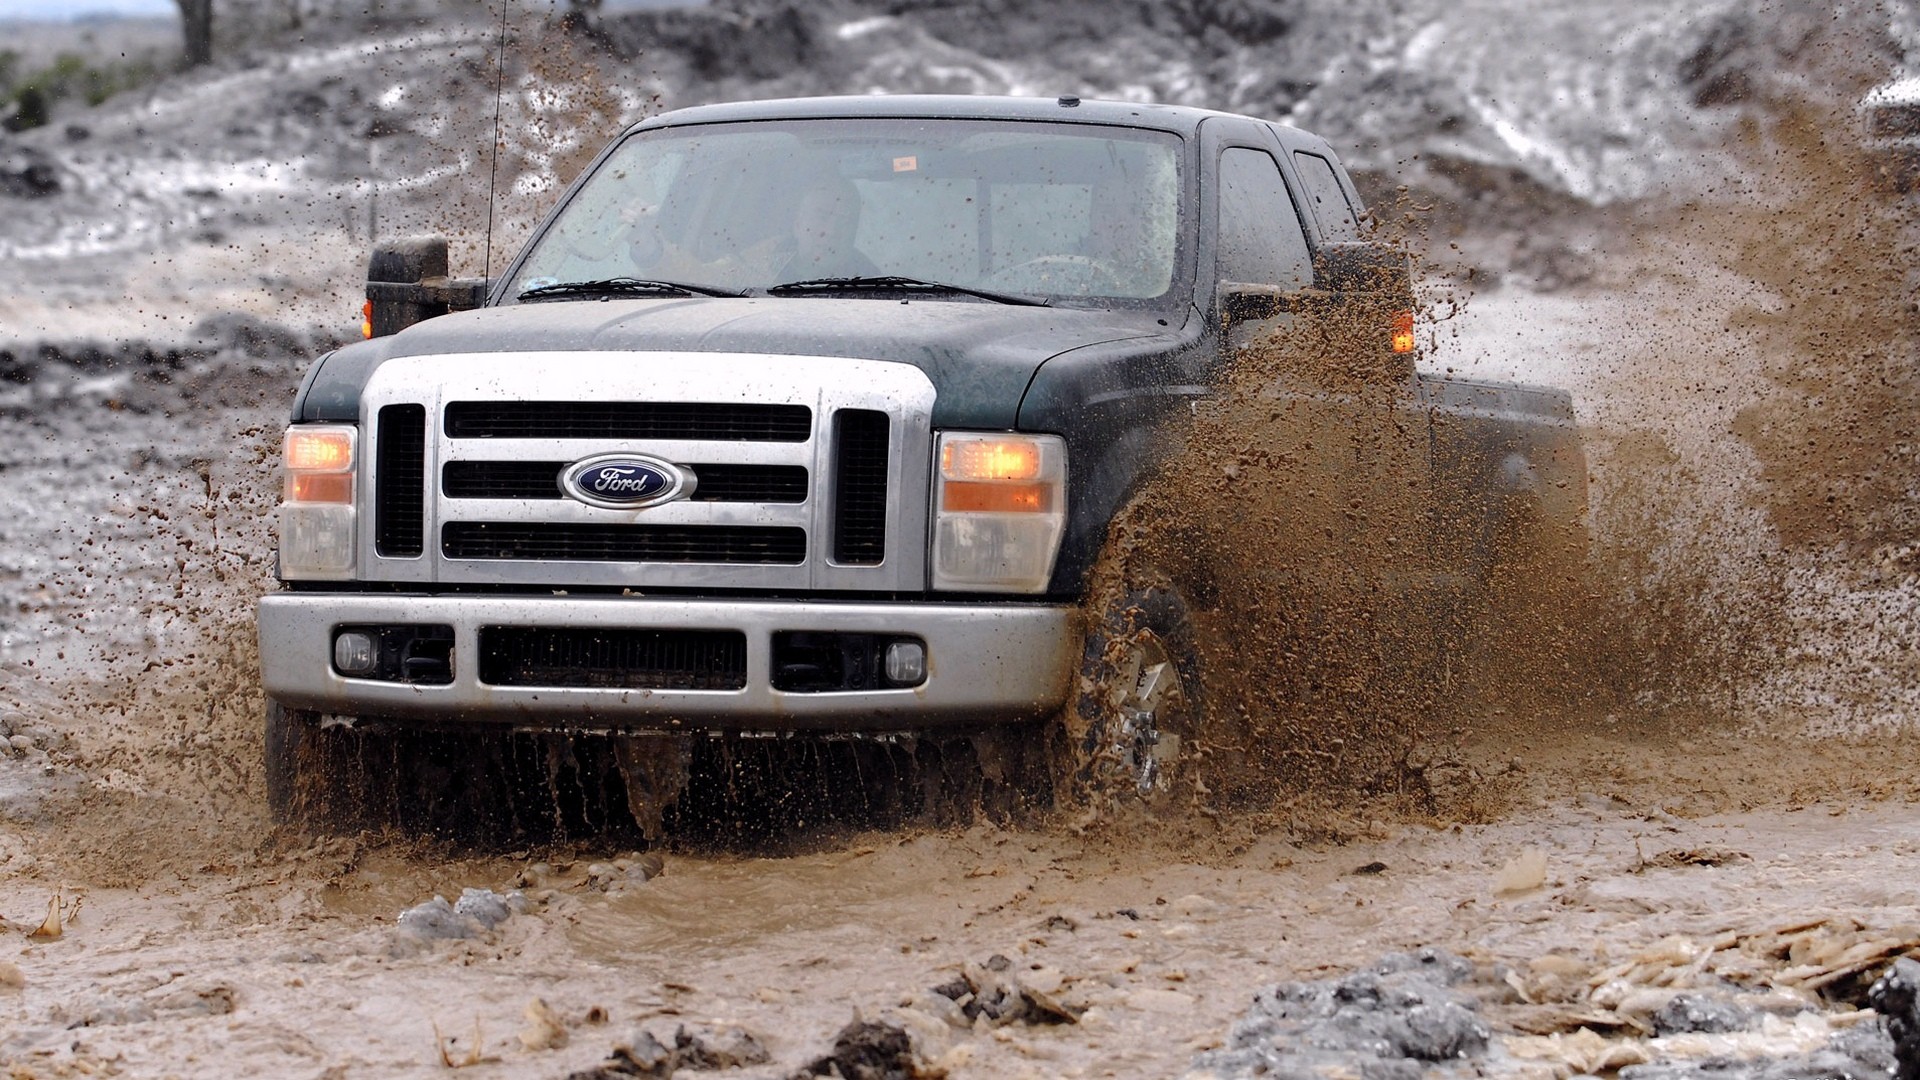 Ford Pickup Truck - HD Wallpaper 